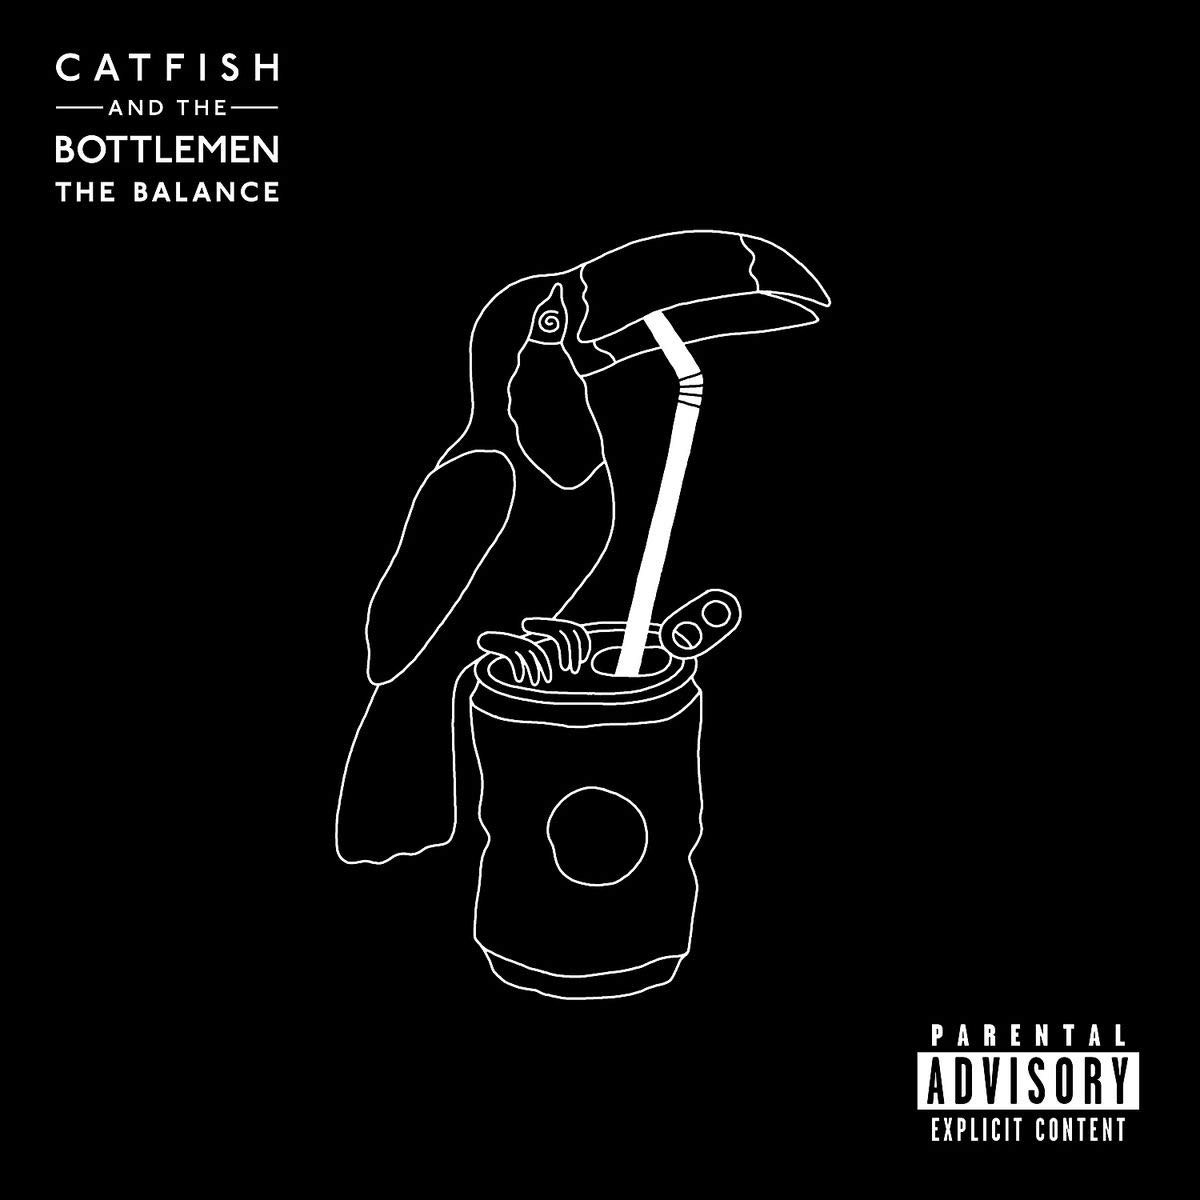 The-Balance-Catfish-and-the-Bottlemen-1625837350